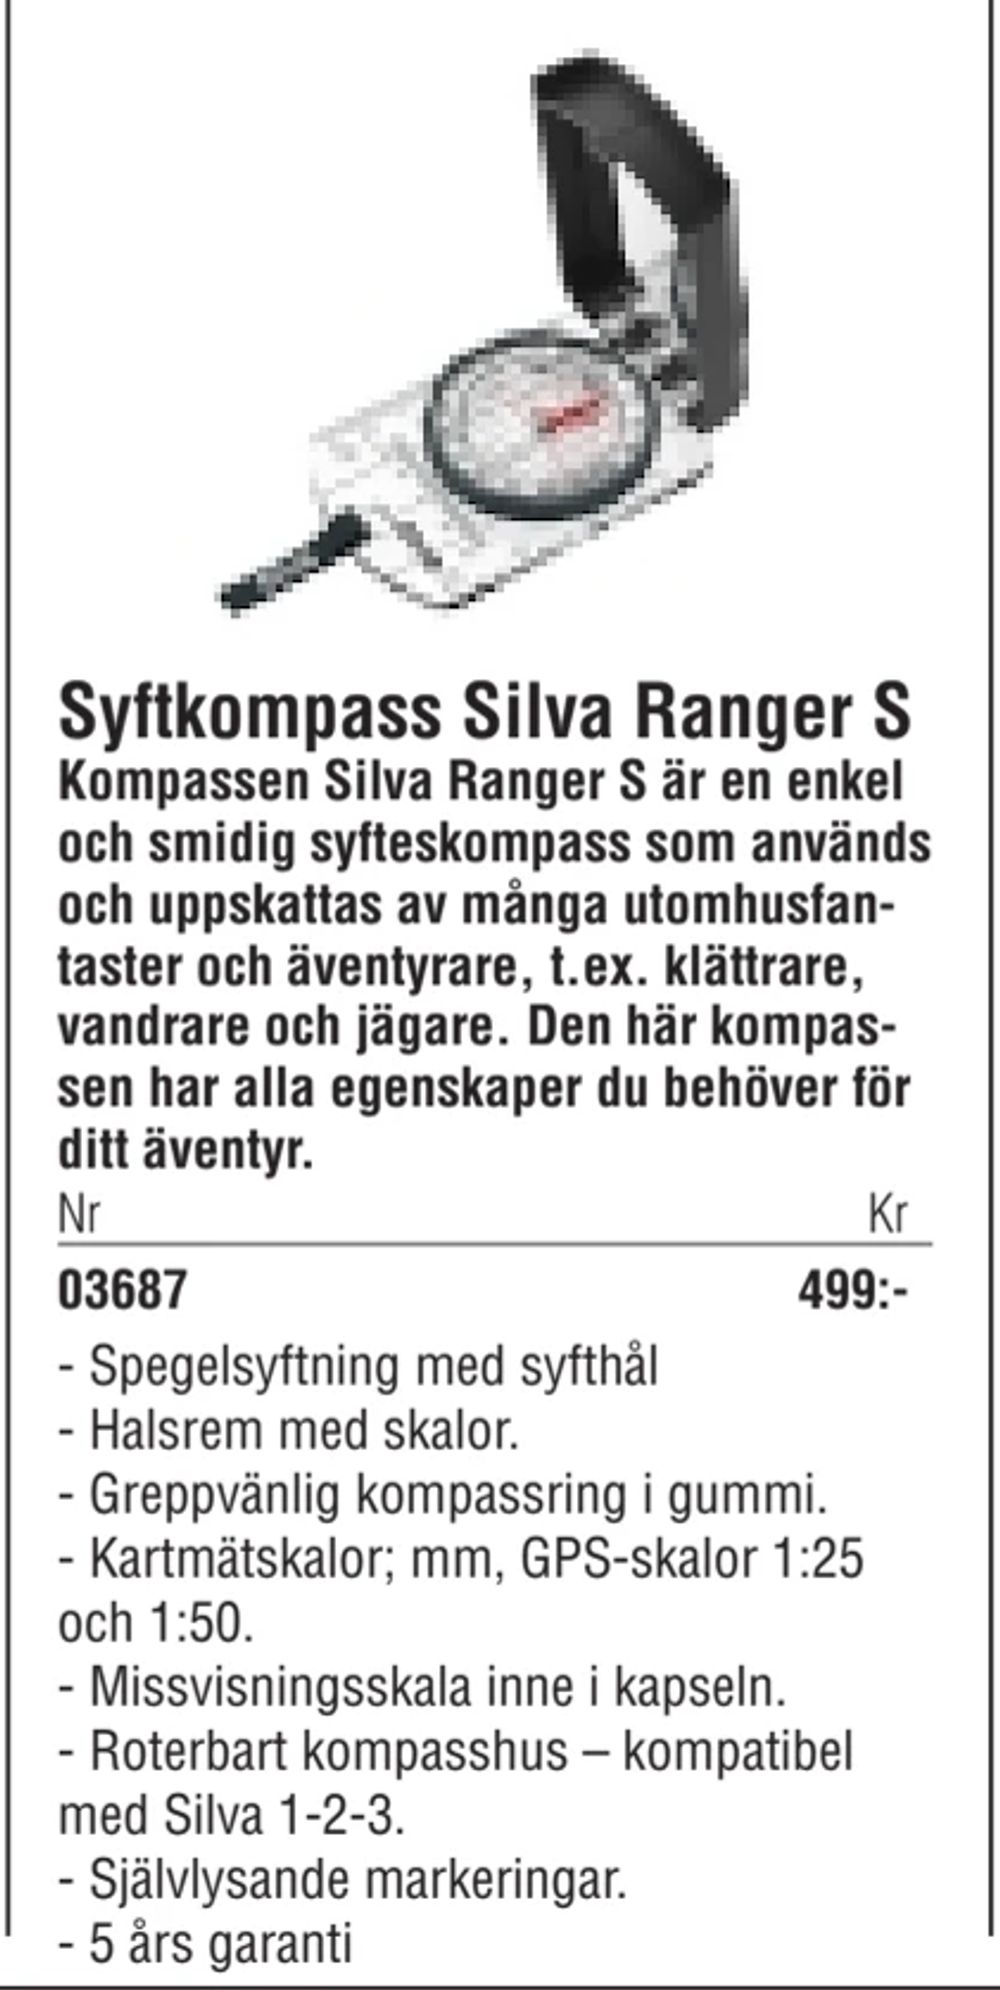 Erbjudanden på Syftkompass Silva Ranger S från Erlandsons Brygga för 499 kr